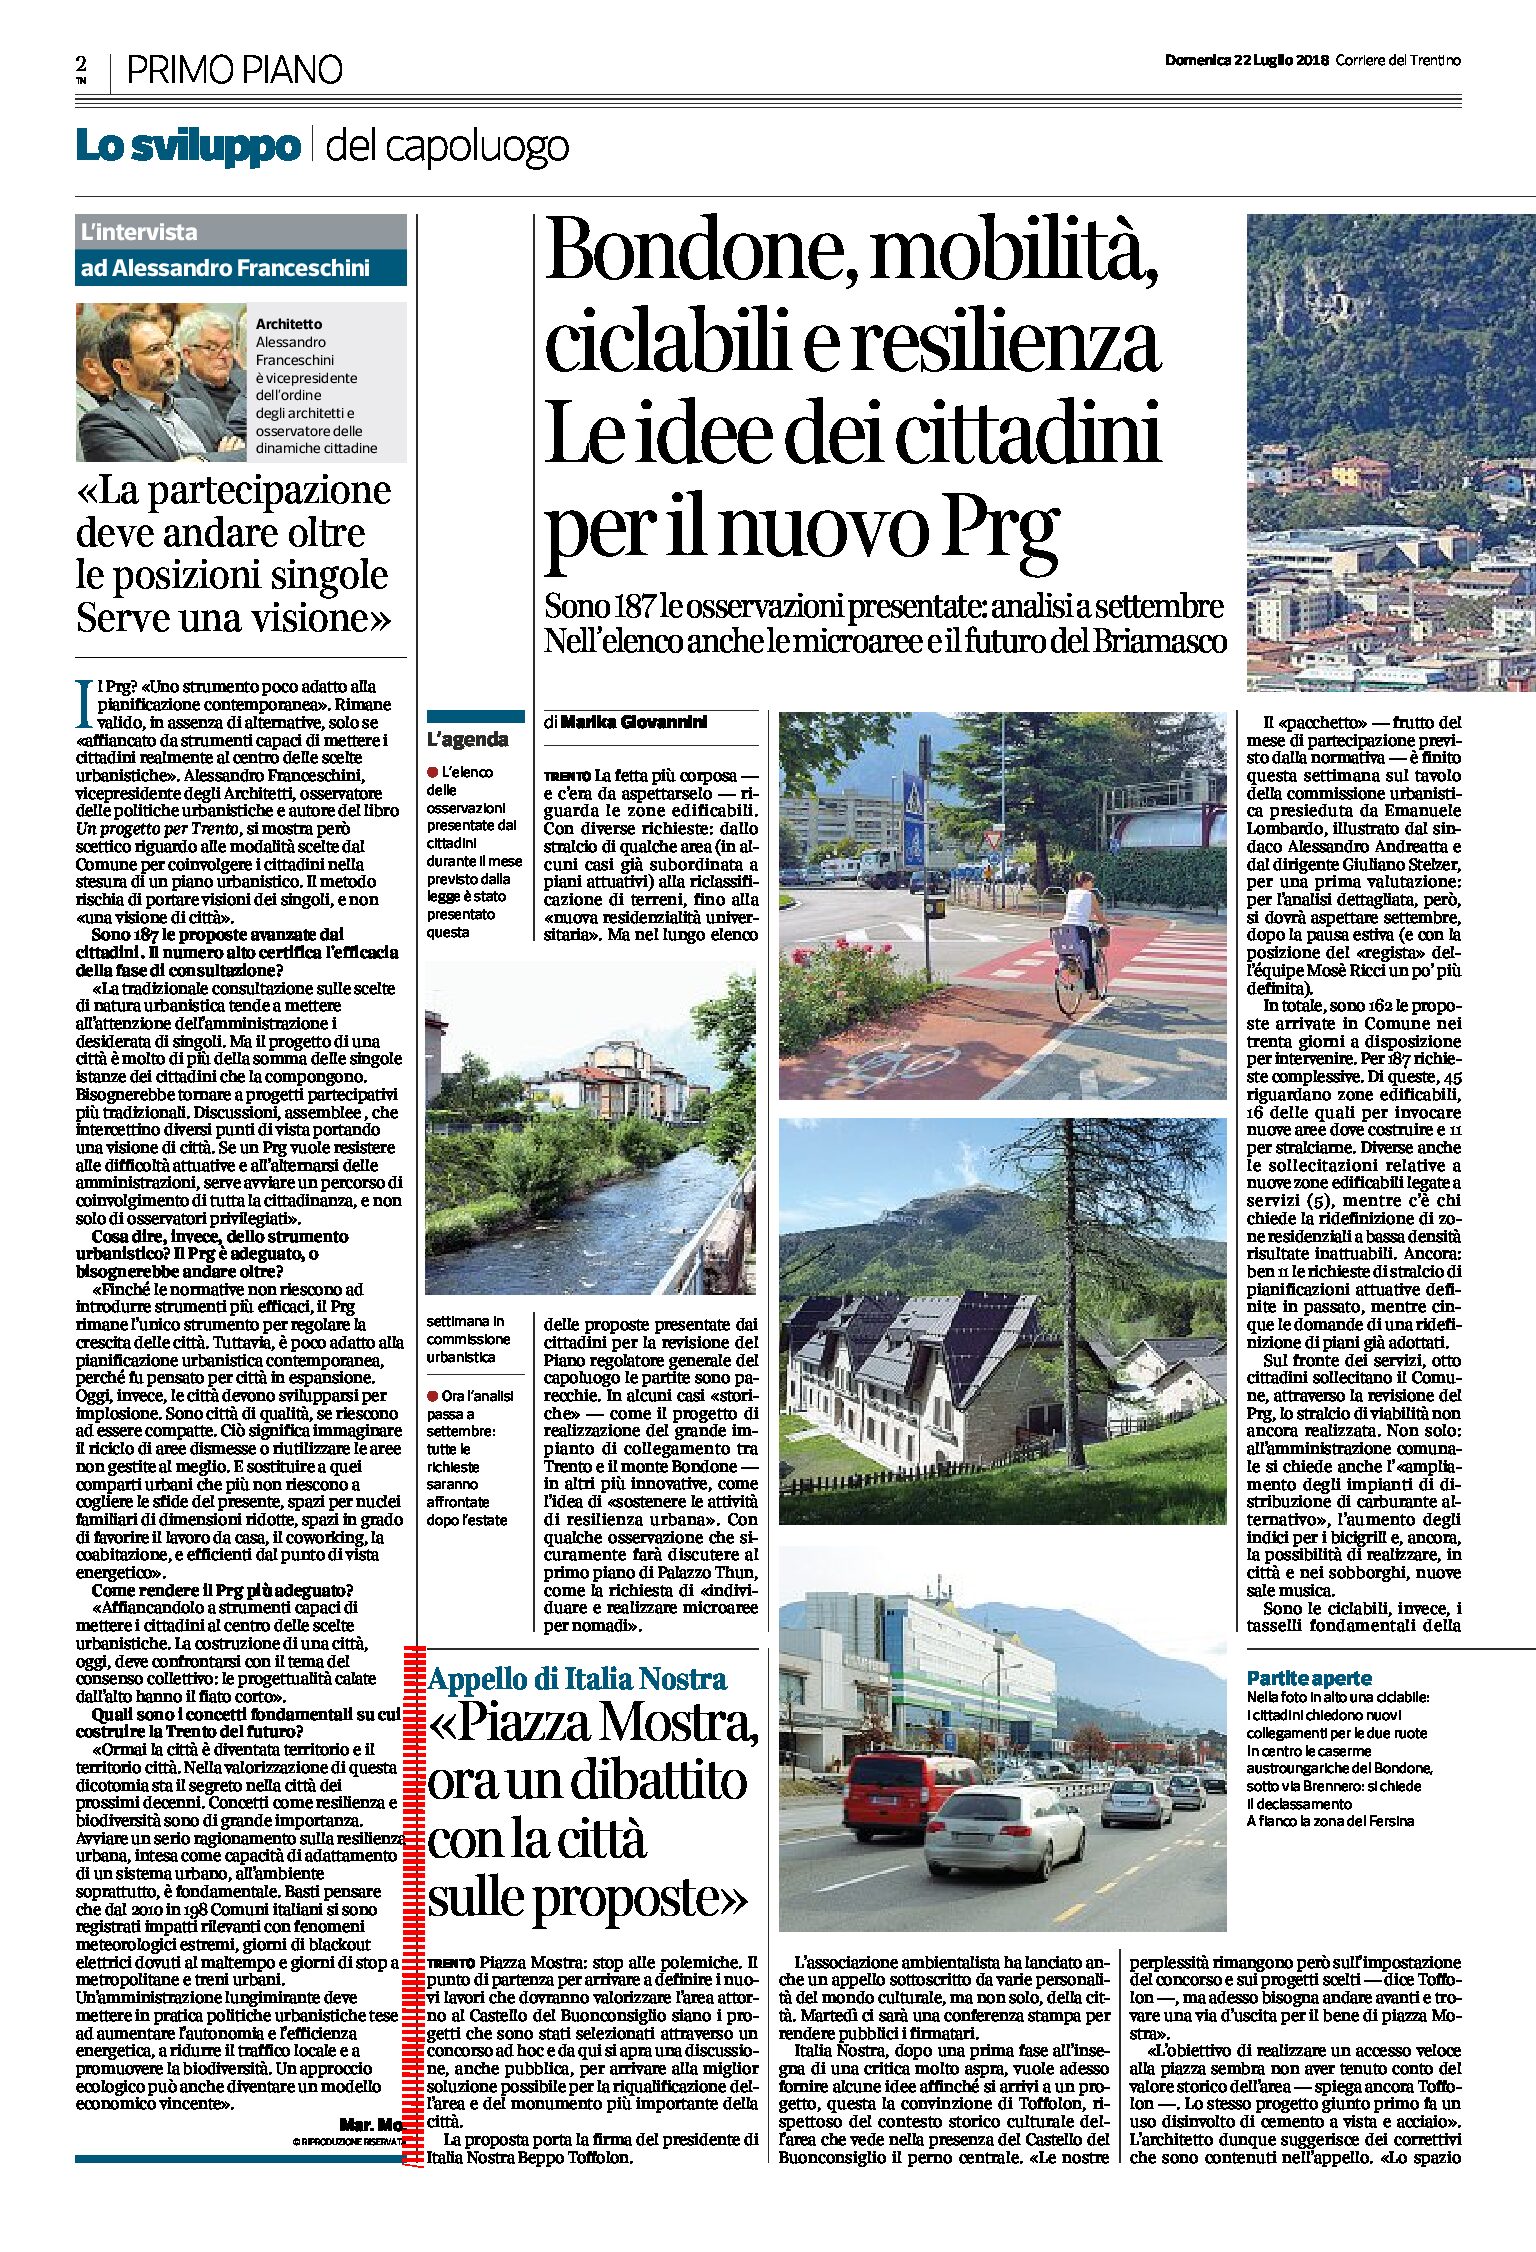 Trento, piazza Mostra: appello di Italia Nostra “un dibattito con la città sulle proposte”